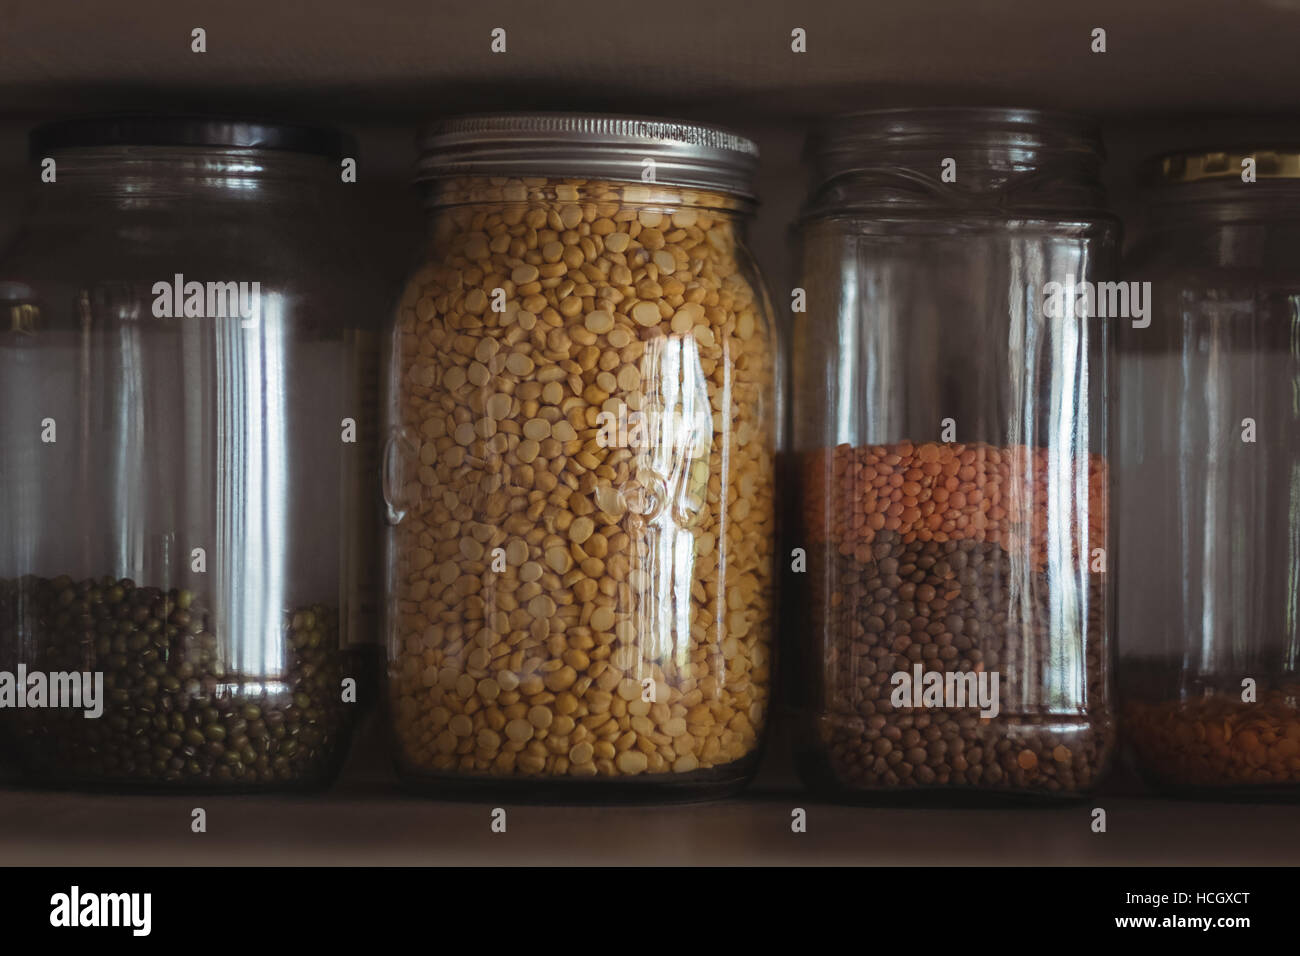 Varie le lenticchie in vasi in cucina ripiano Foto Stock